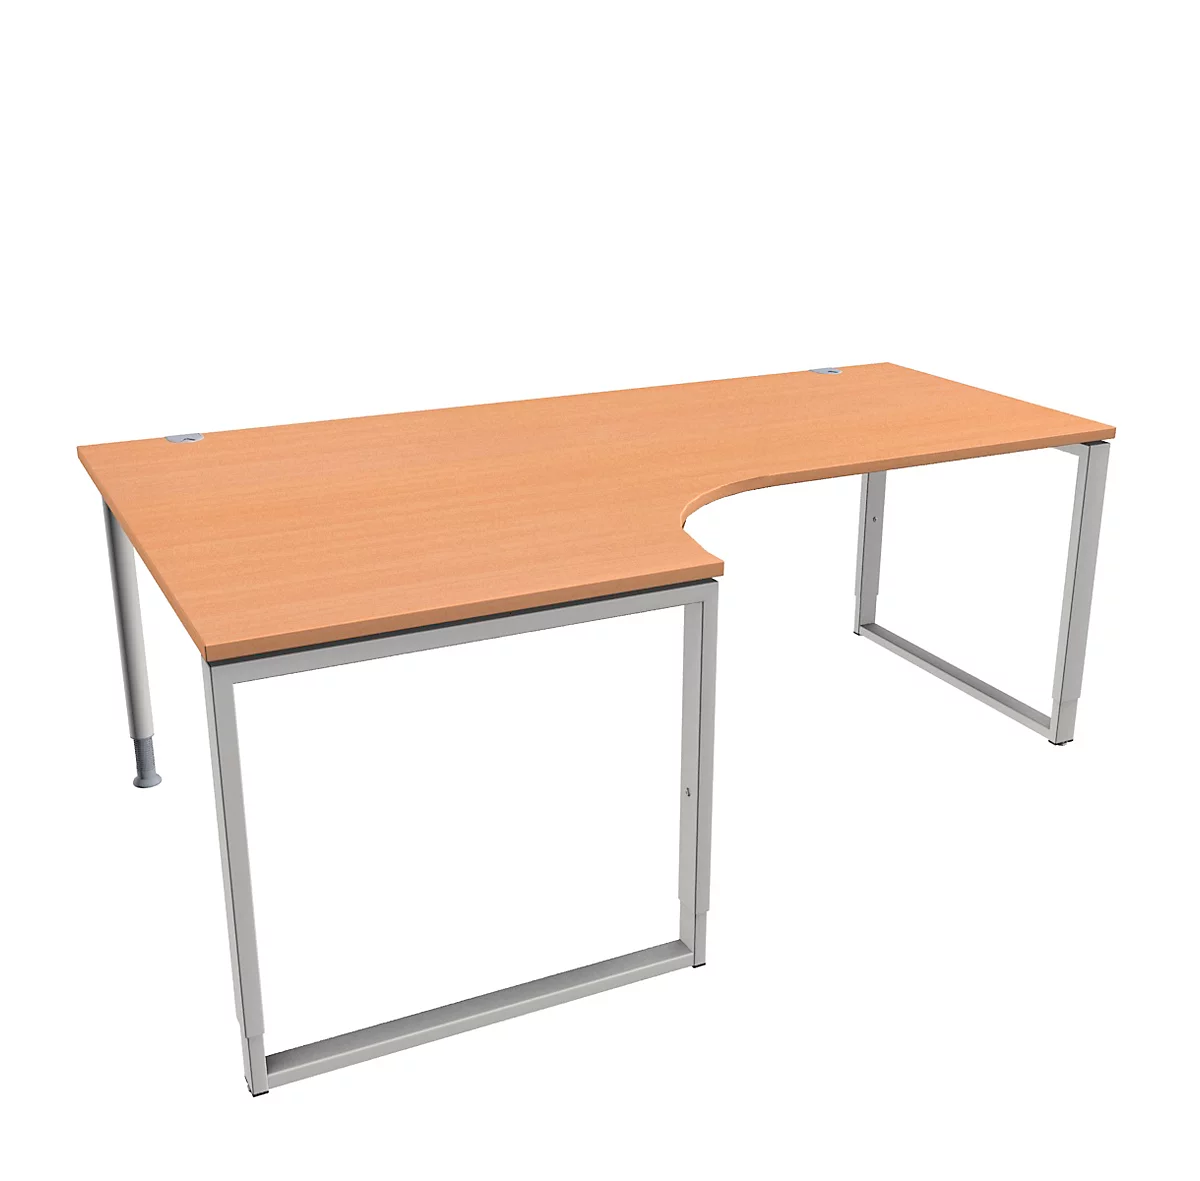 Schäfer Shop Genius MODENA FLEX escritorio acodado, 90°, pata de soporte, fijación a la izquierda, ancho 2000 mm, acabado haya